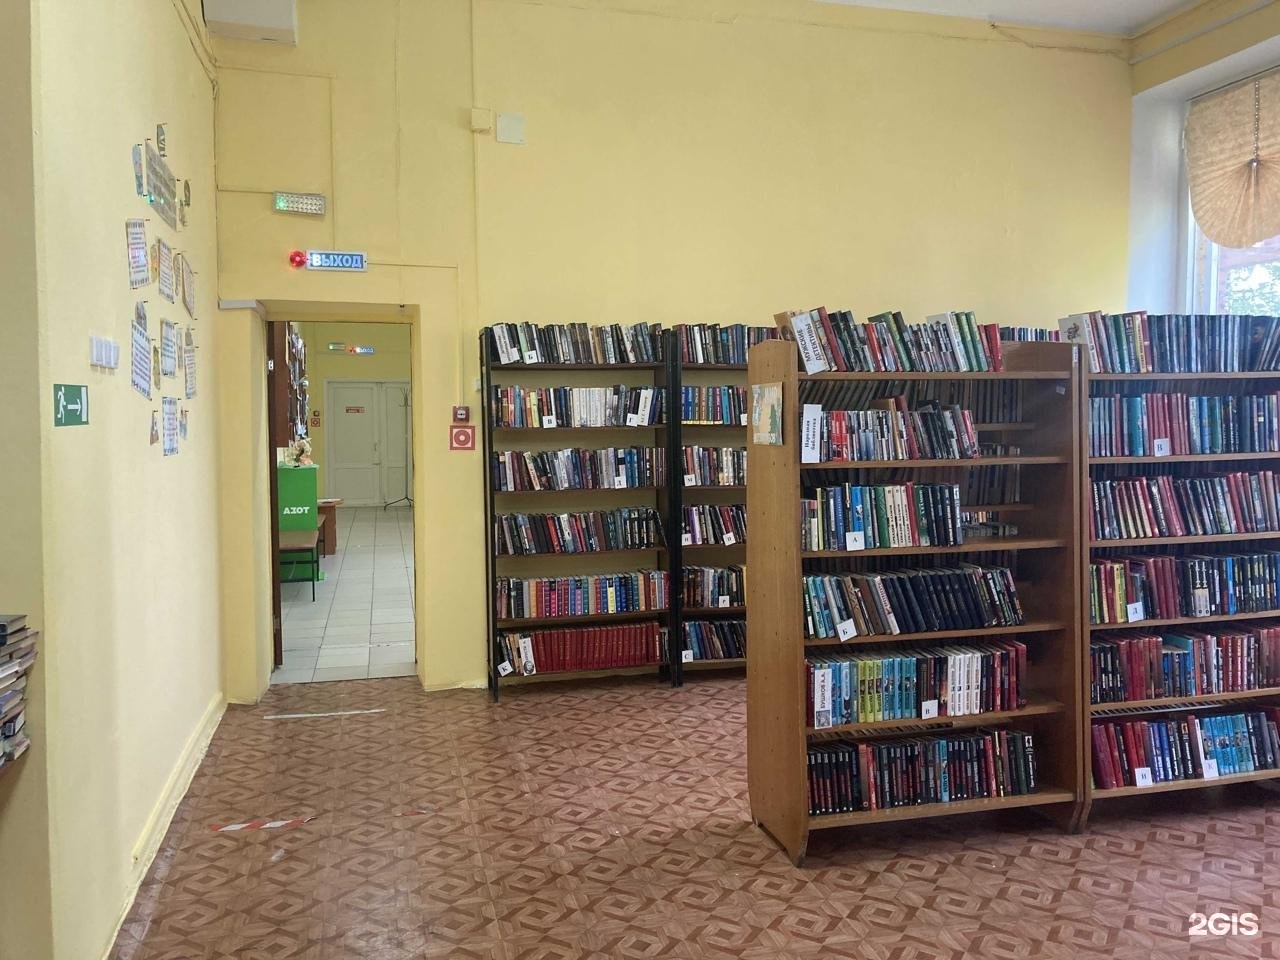 Кемерово библиотеки сайт. Библиотека Кемерово.